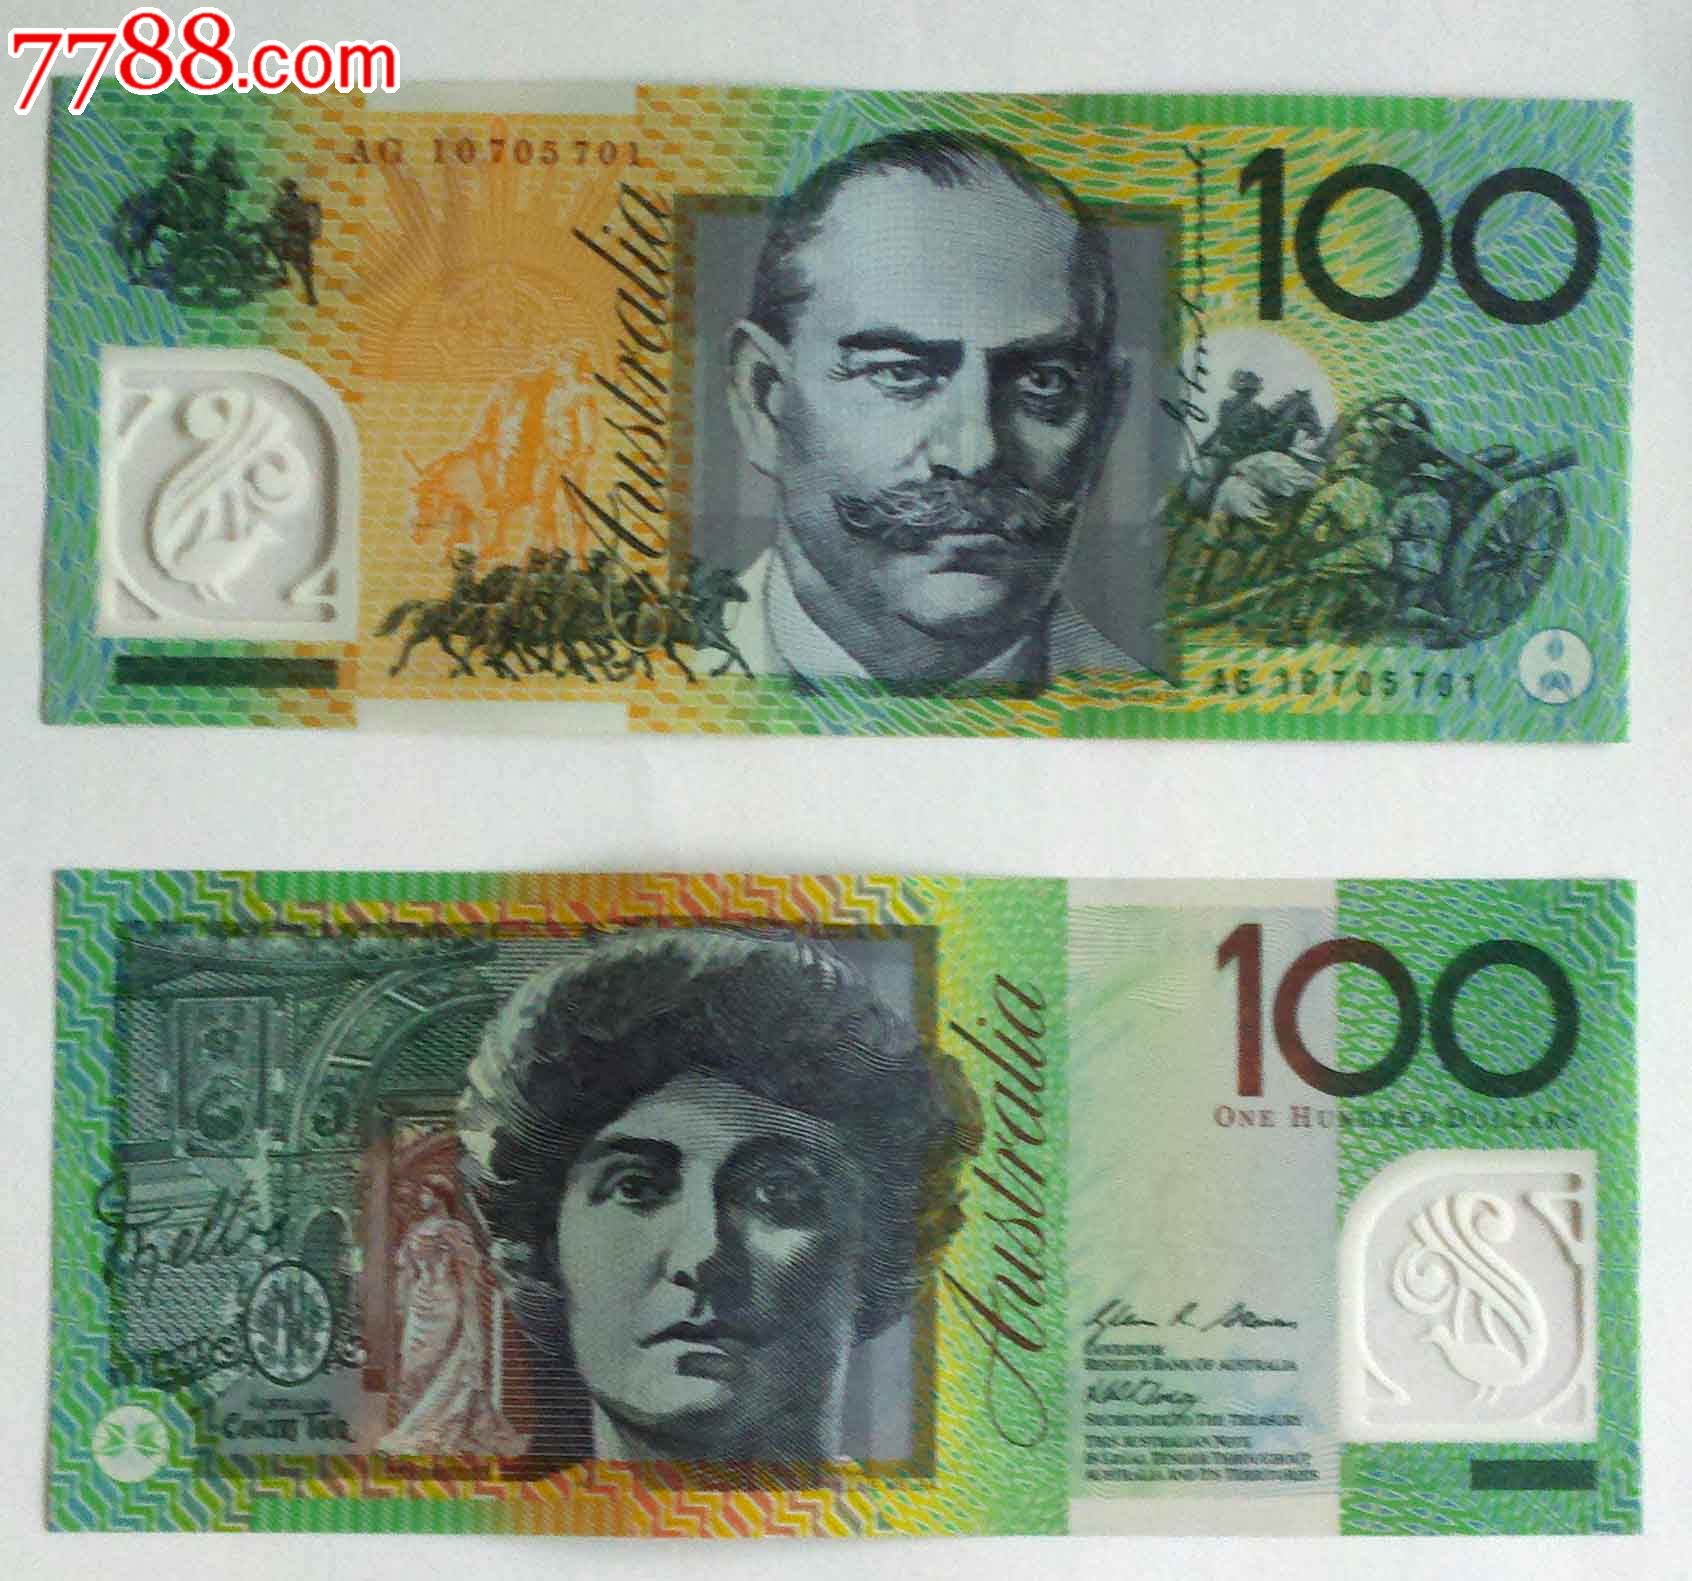 全新澳大利亚塑料钞,面值100元